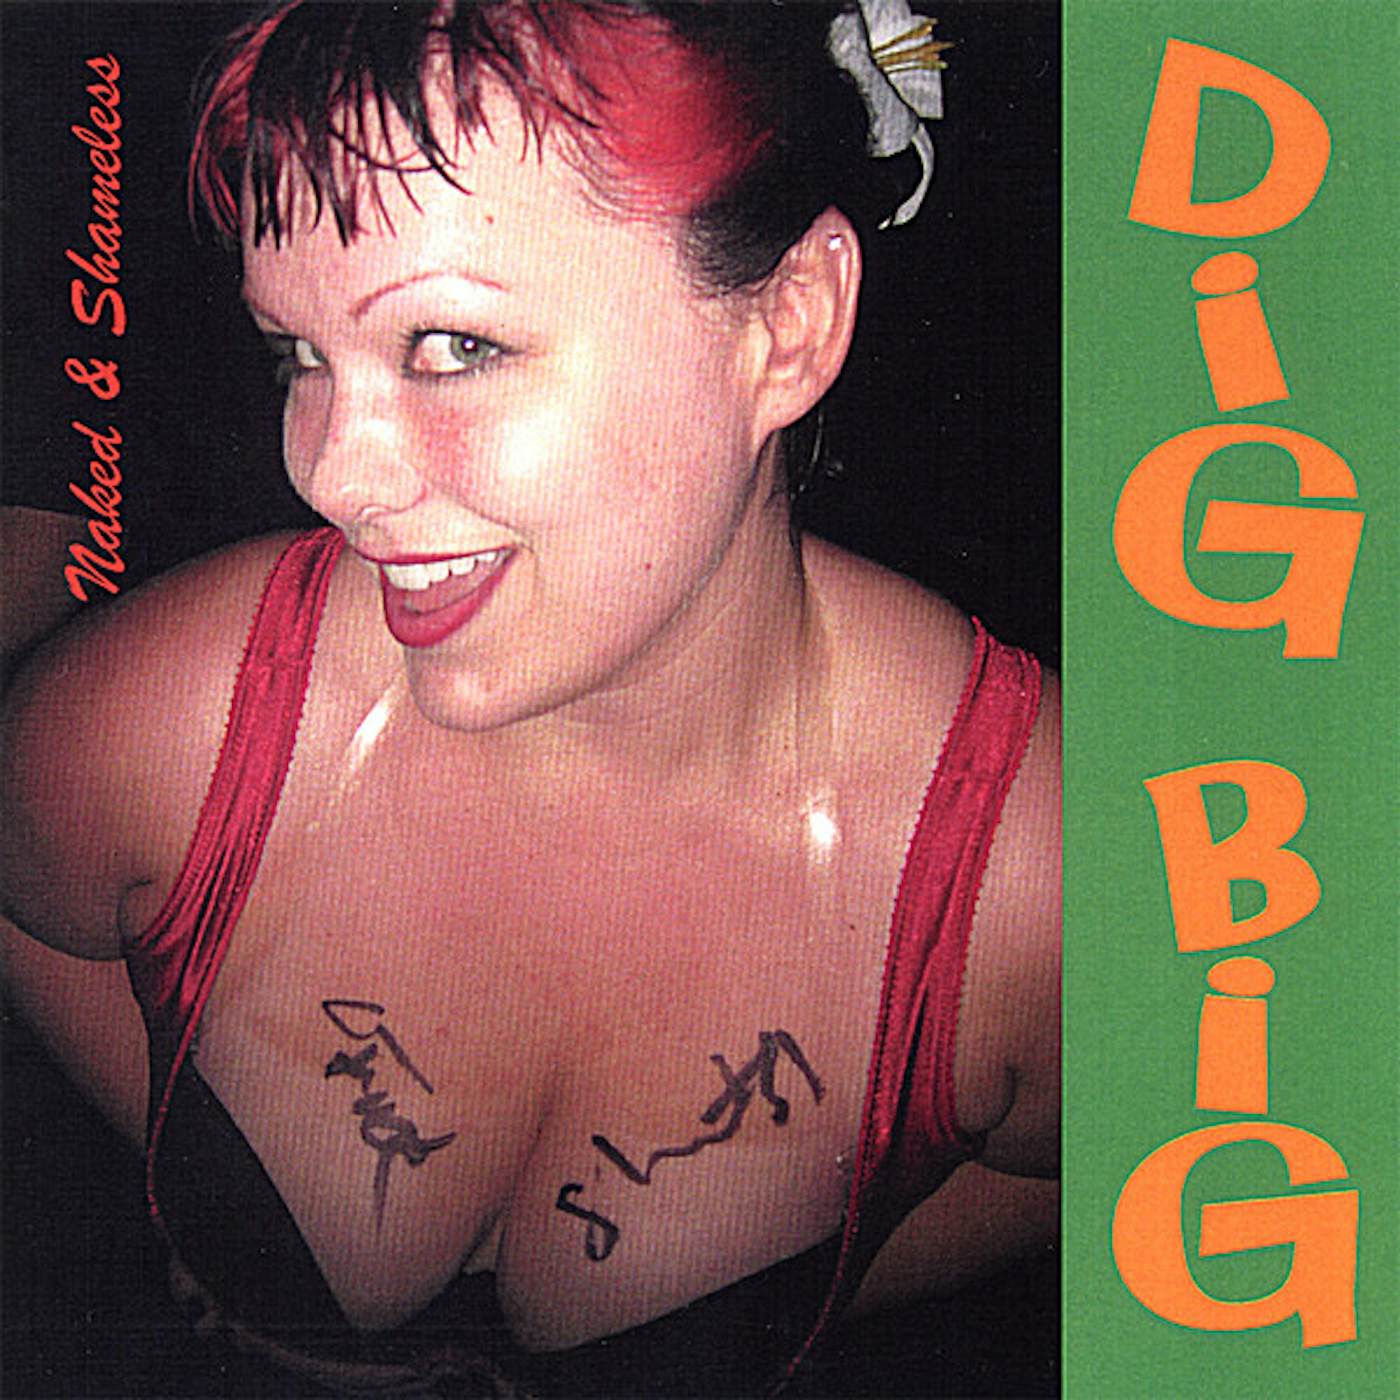 Naked & Shameless DIG BIG CD